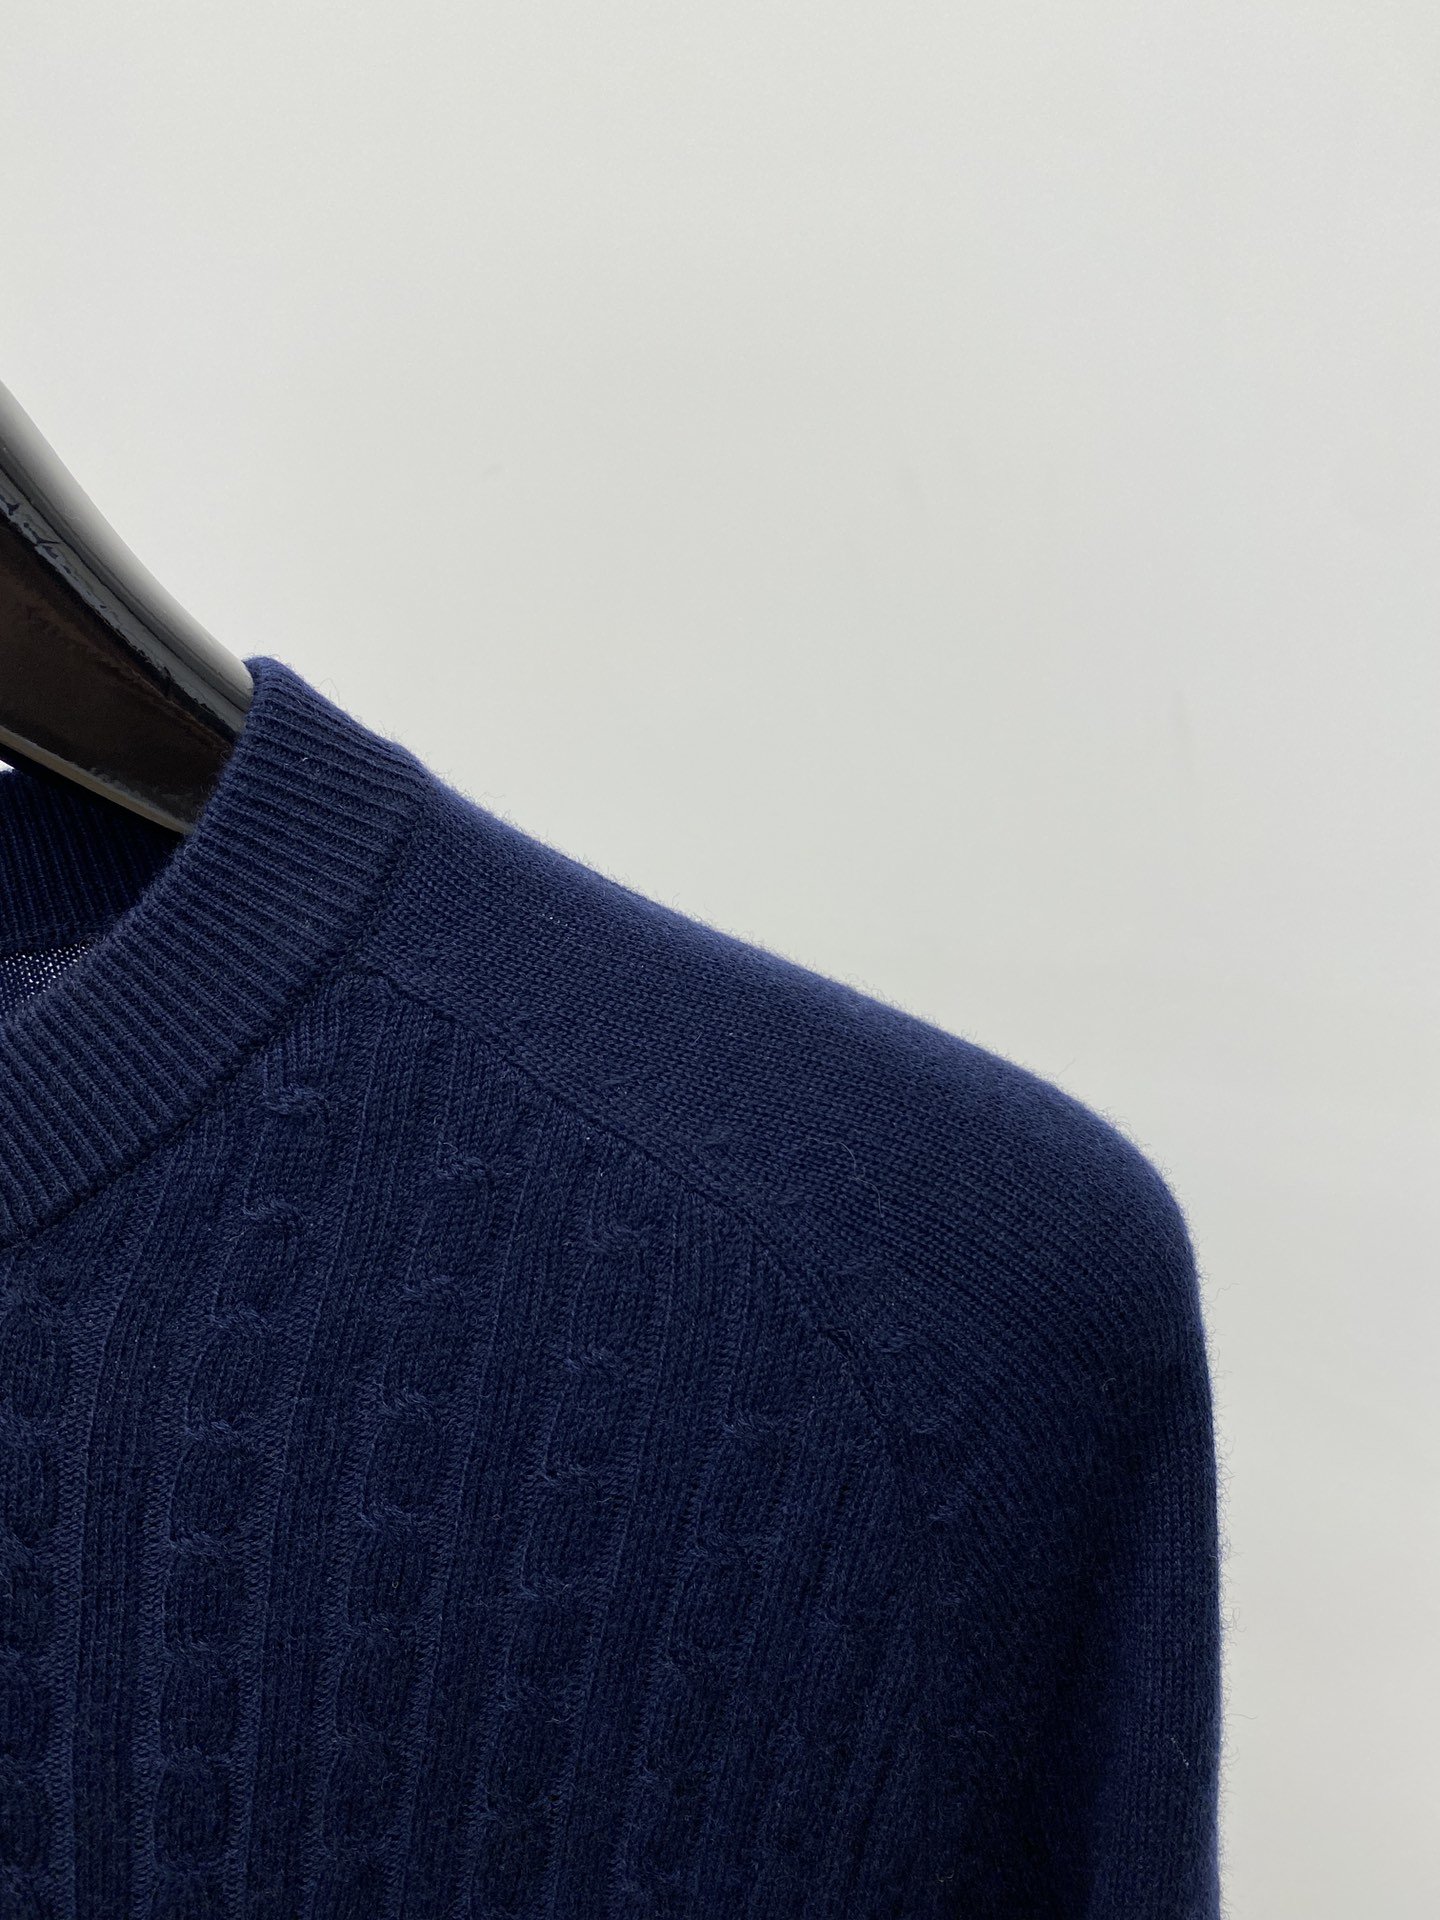 古奇2023新品羊毛衣具有手感细腻柔软可直接与肌肤接触让暖心的纱线变化出细腻的质感顶级工艺极具特色出彩款